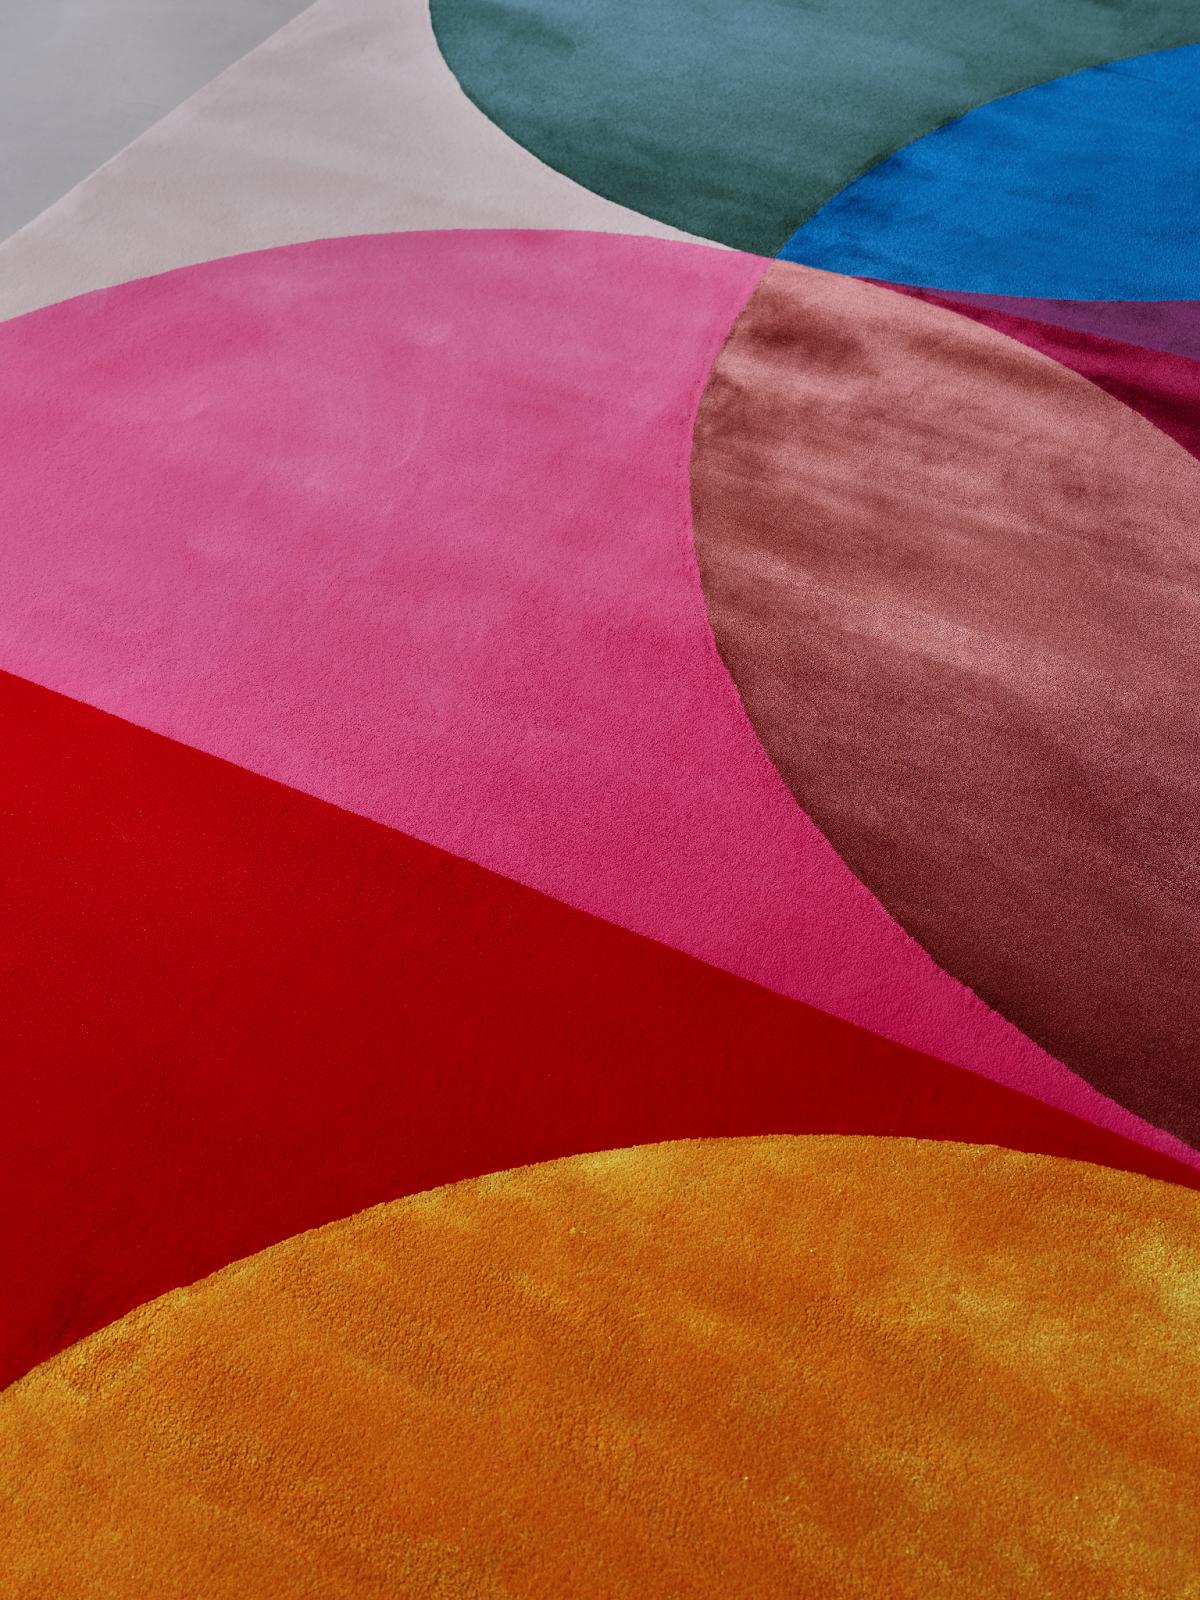 Die Teppichkollektion Espressionismo Floreale ist aus einer luxuriösen Mischung aus neuseeländischer Wolle und veganer Seide gewebt. Die Teppiche werden in Los Angeles entworfen und in Portugal in der Handtufting-Technik von Laura Niubó